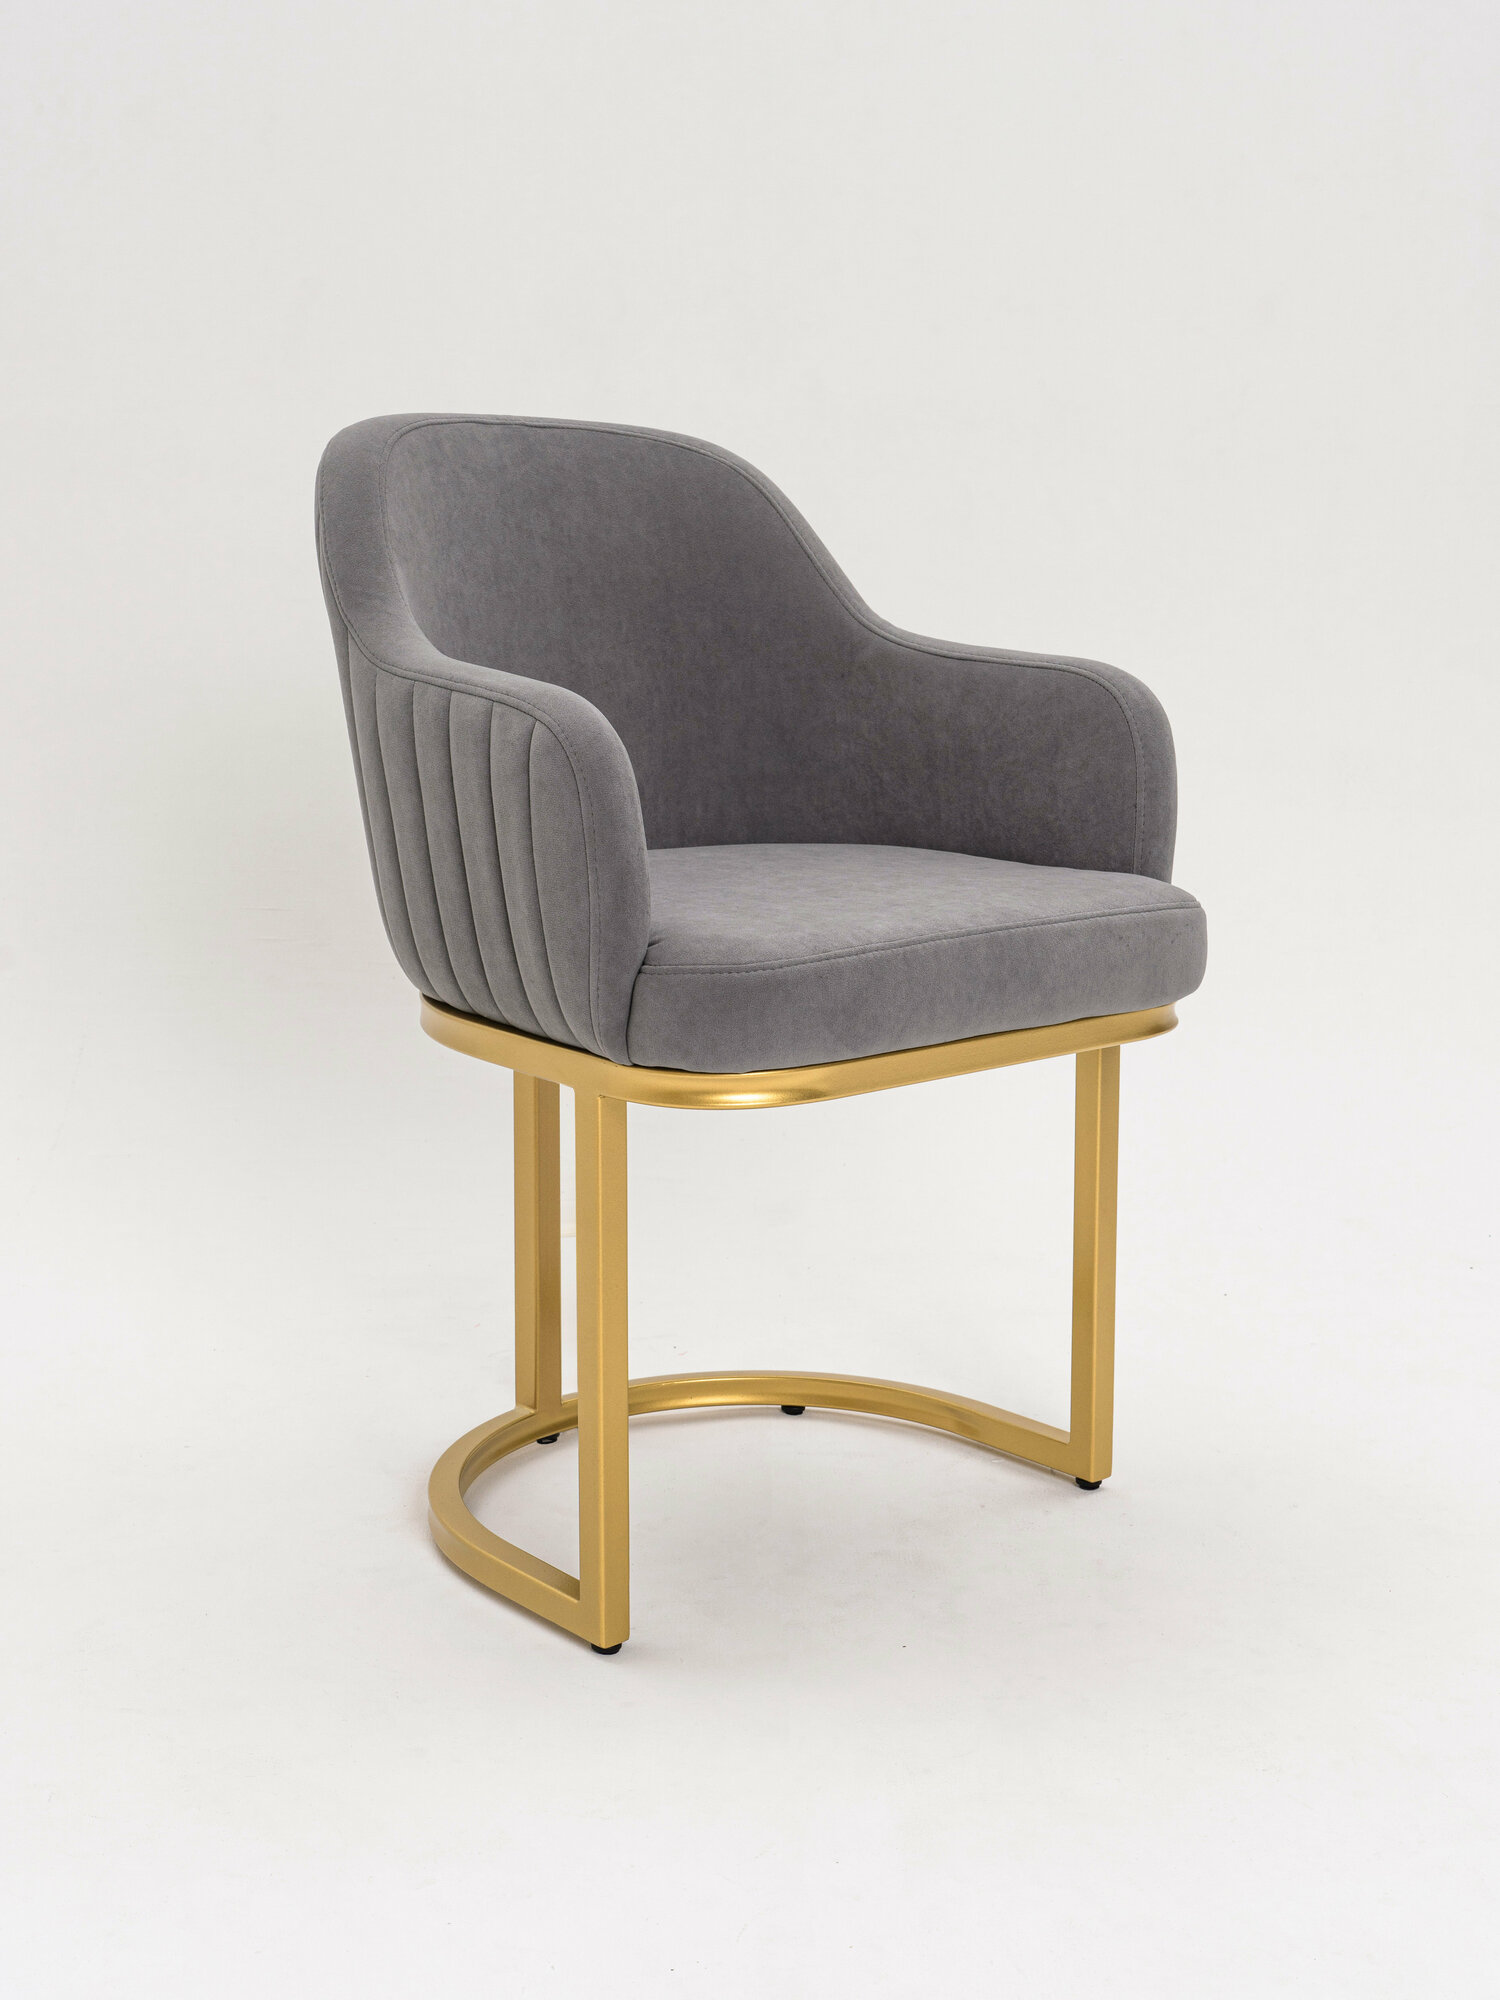 Стул Bella Gray / Gold, стул для гостиной, кресло для гостиной с золотыми ножками, серый стул с золотом